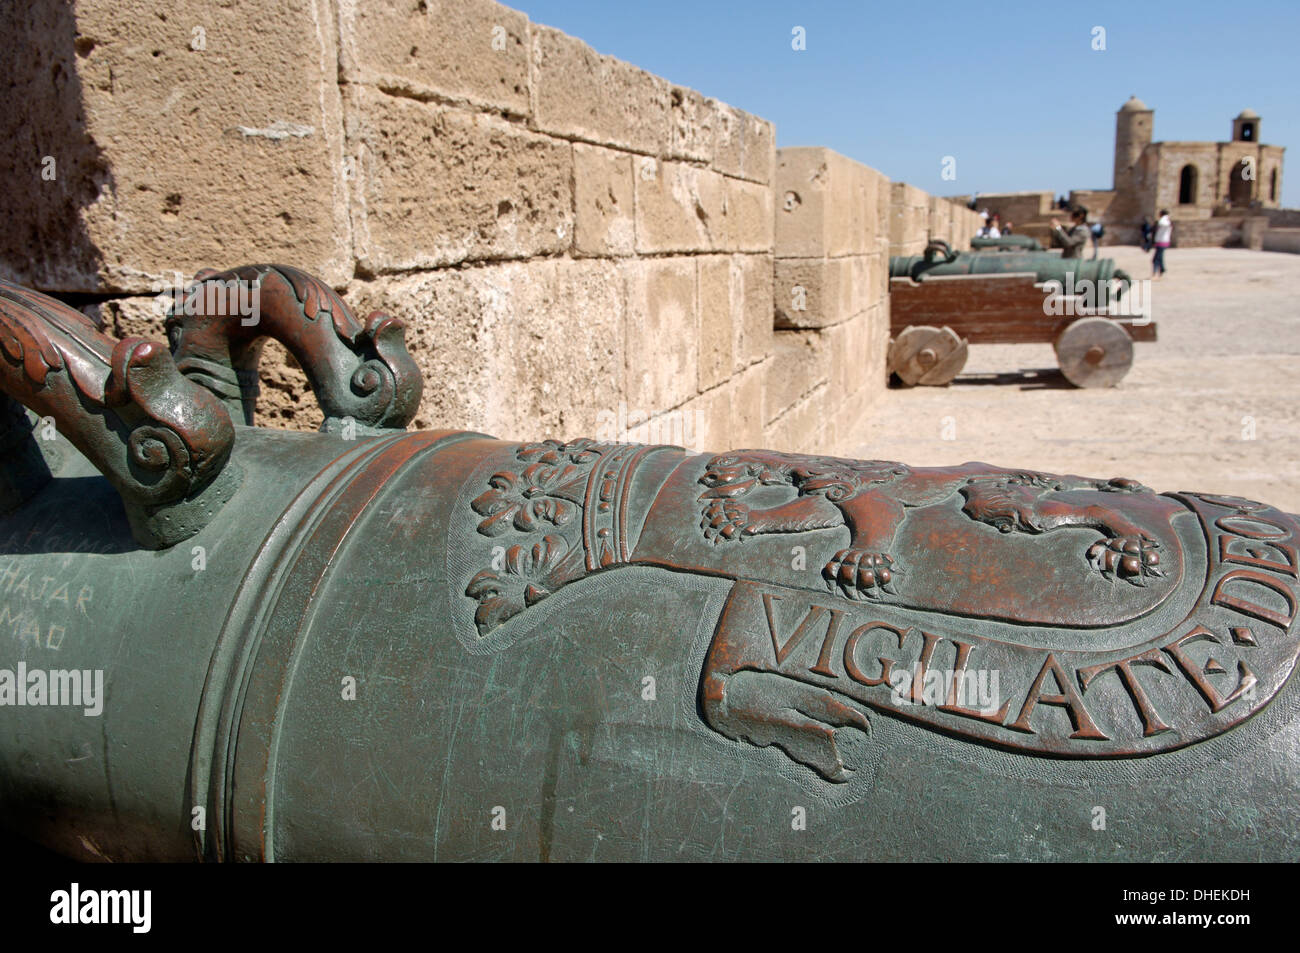 Alte Kanonen, Skala der Kasbah eine zinnengekrönte Bastion, 300 Meter in der Länge, Essaouira Mogador, Marokko Stockfoto